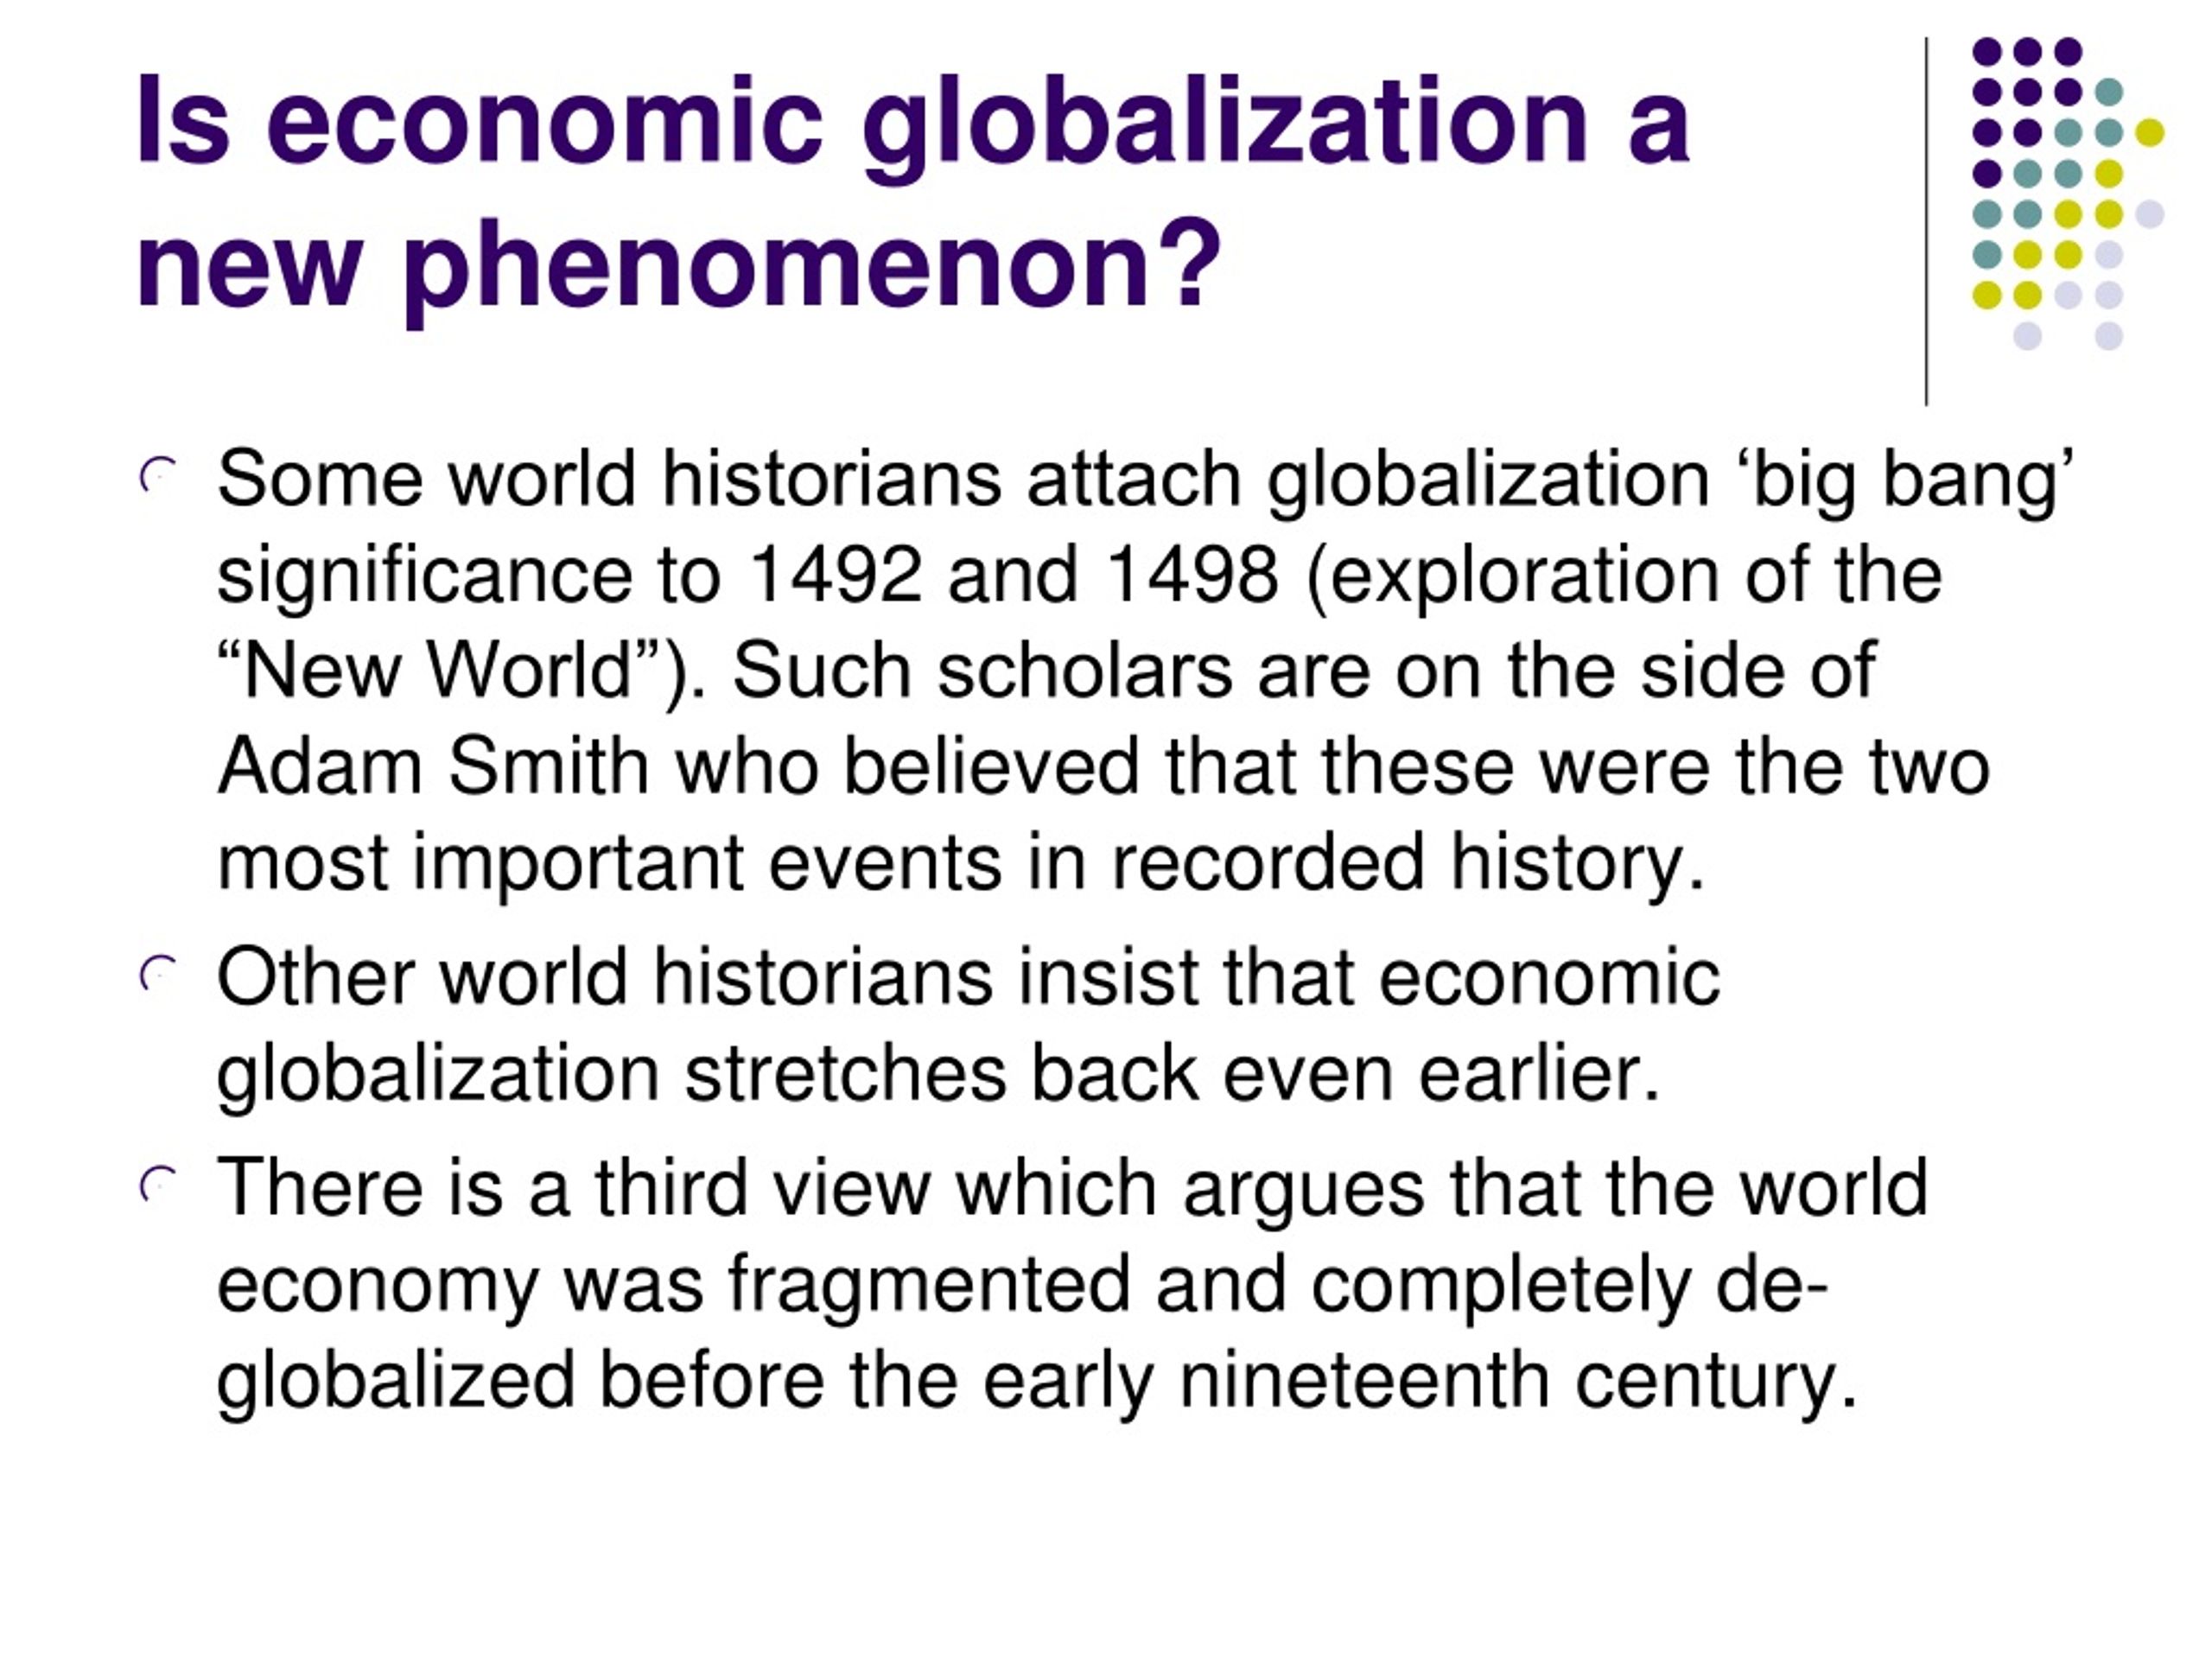 is economic globalization a new phenomenon essay